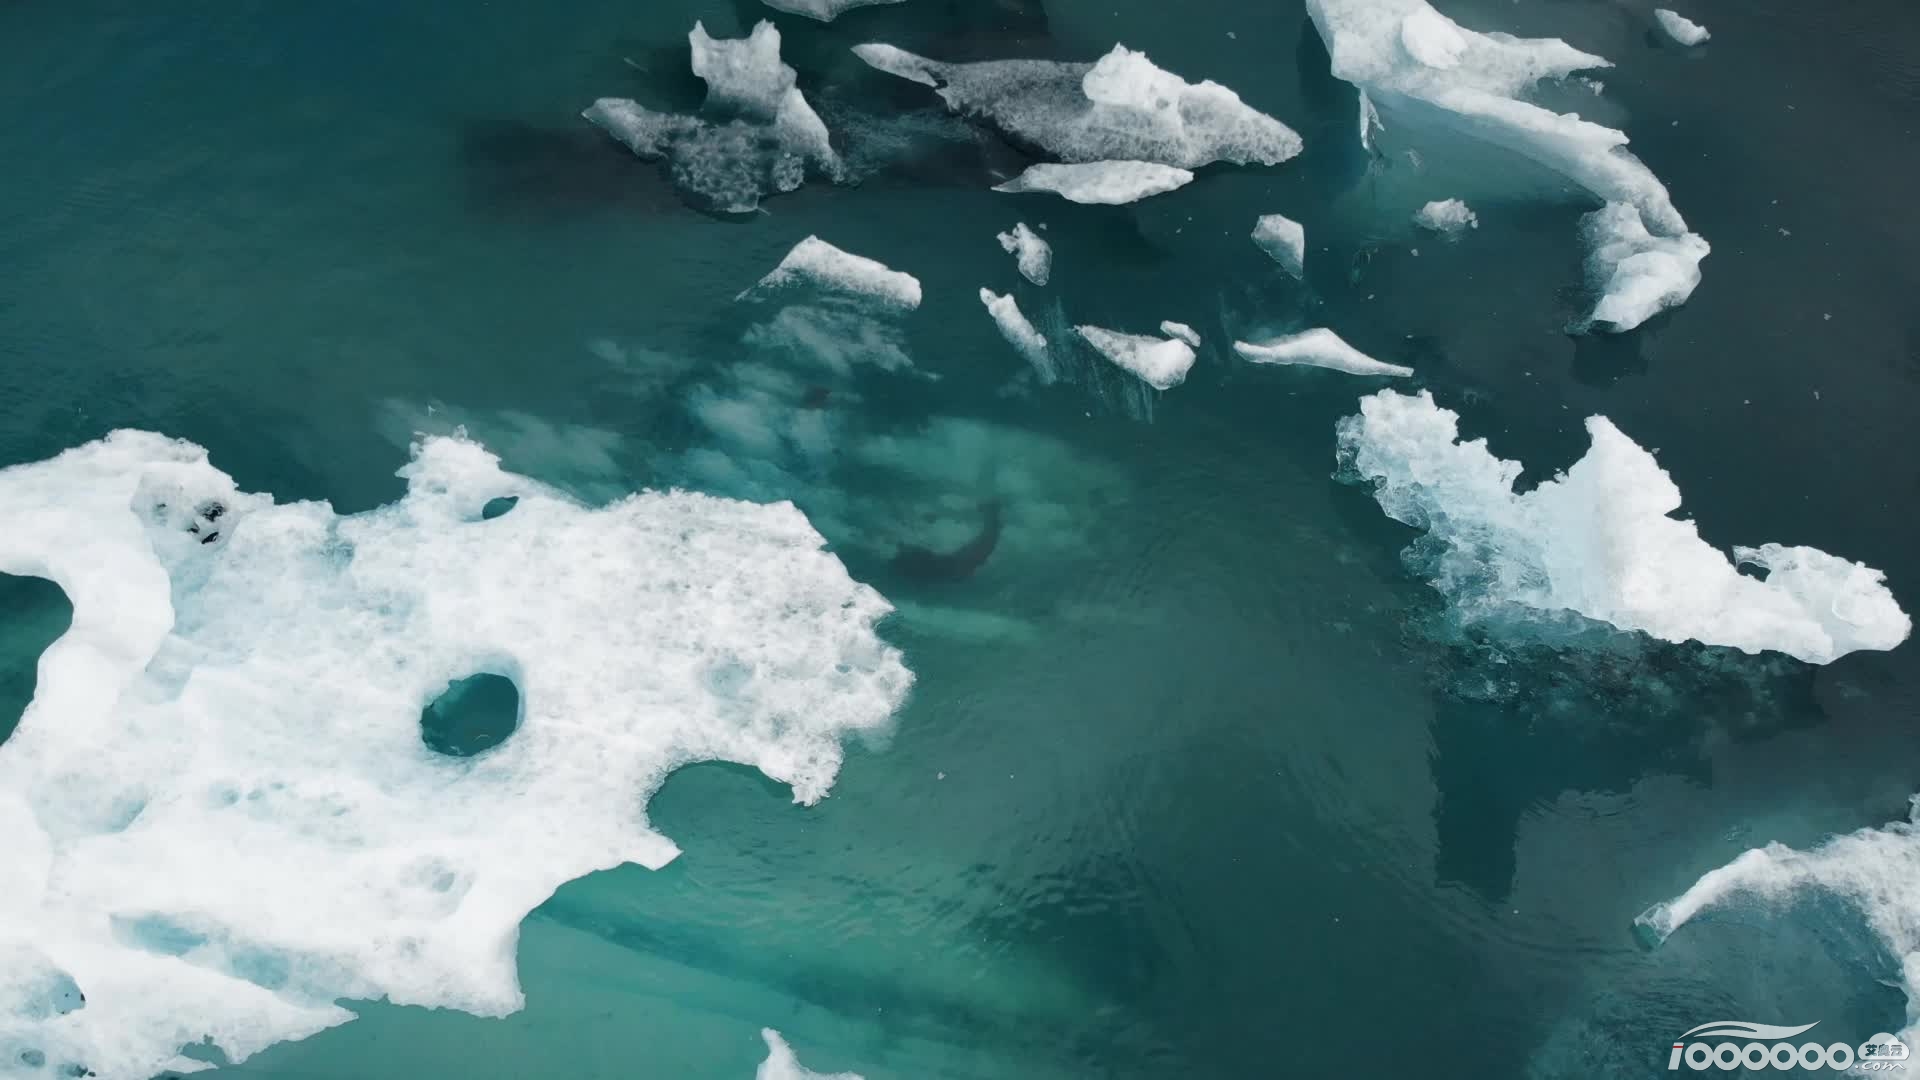 17张漂亮的冰川融化1920宽高清图片图形素材免费PPT背景图片下载 (1).png.png